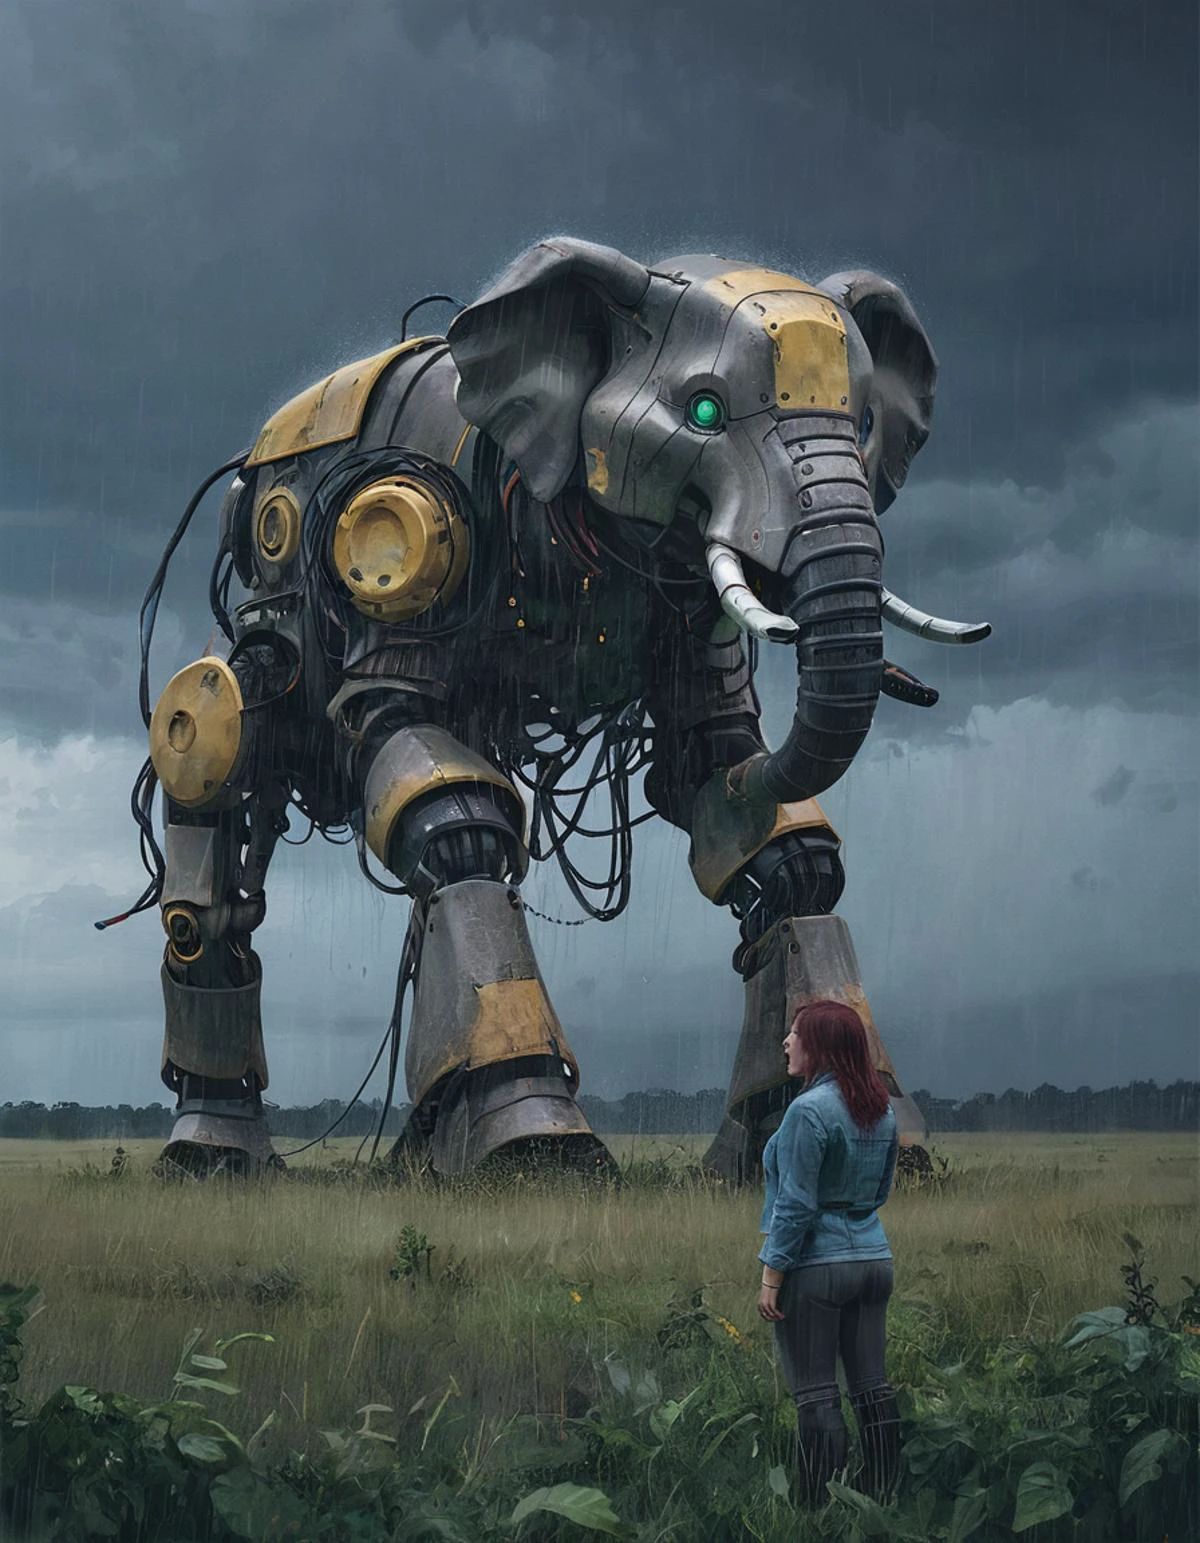 SSTA гигантский толстокожий робот, заросшее пастбище, Любопытная женщина, широкий план, дождь, буря, освещение создает драматическую атмосферу